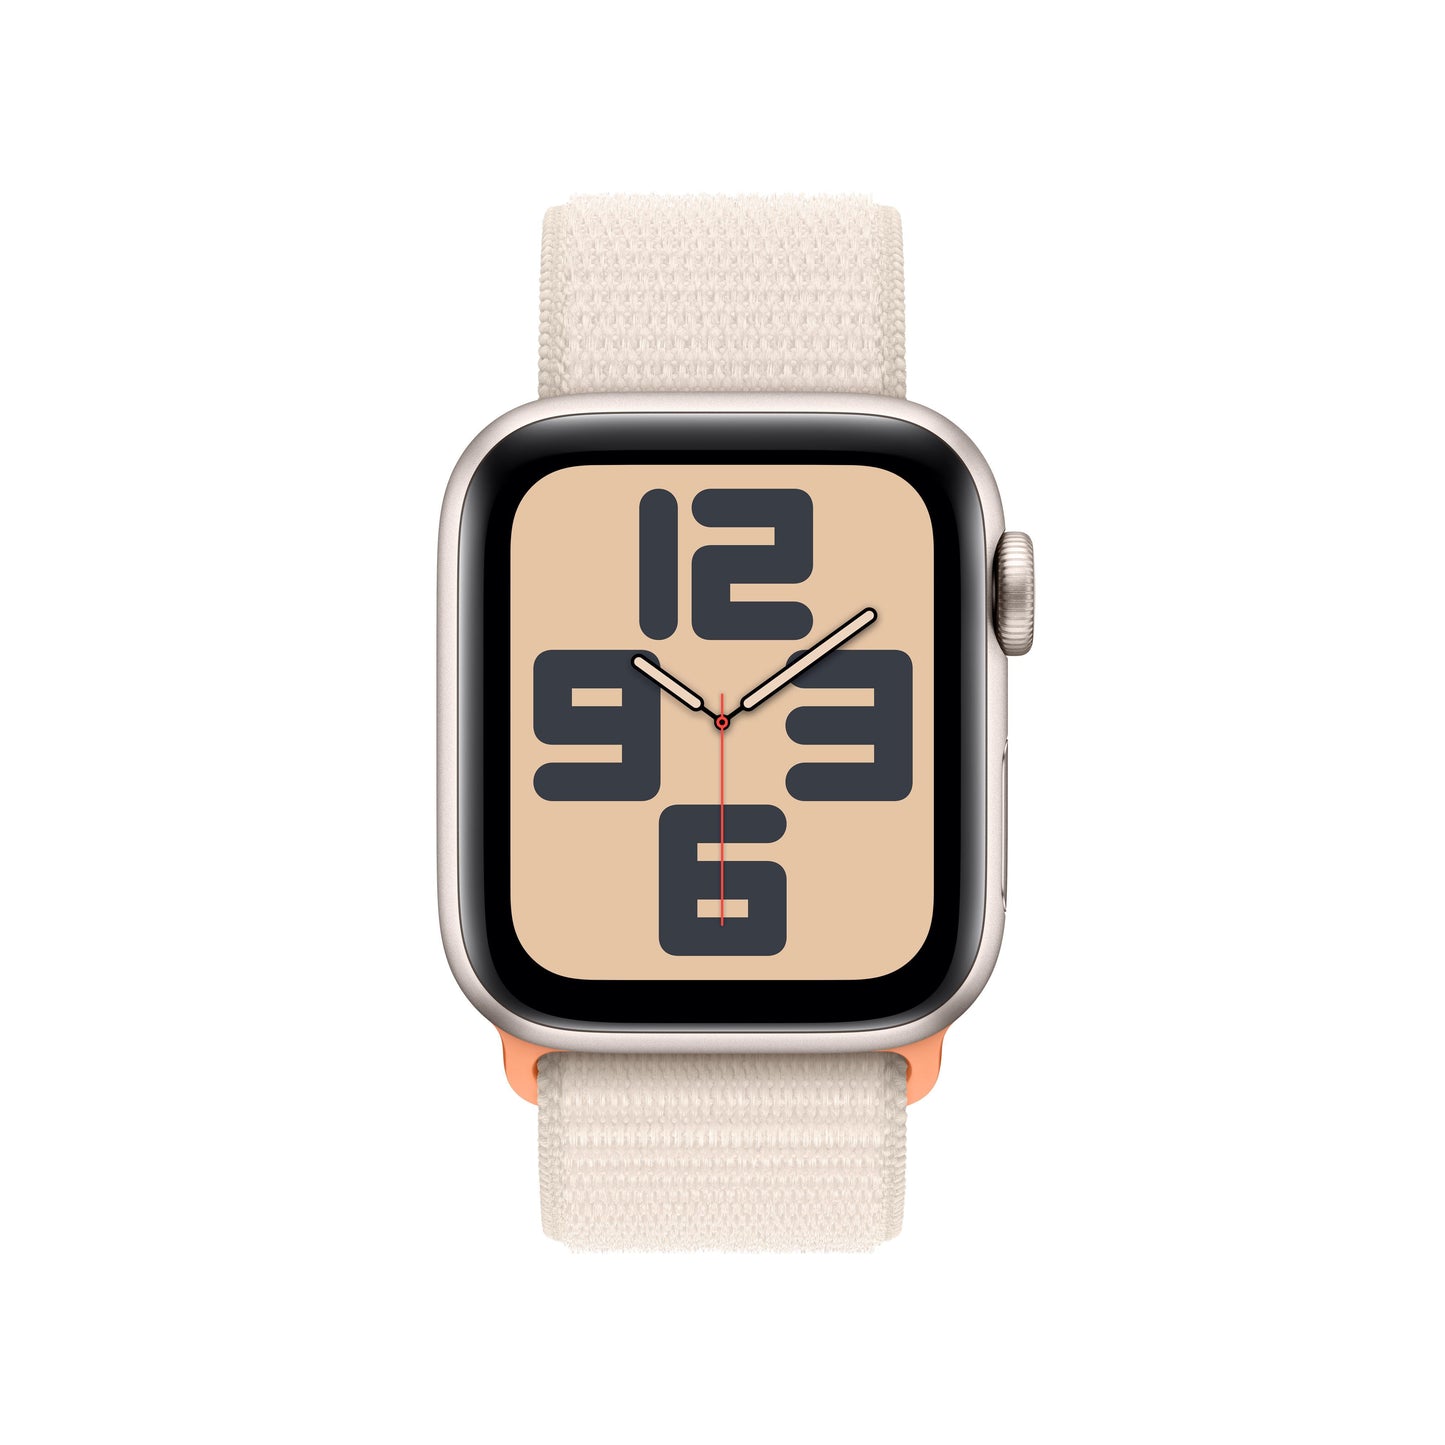 Apple Watch SE (GPS) - Caja de aluminio en blanco estrella de 40 mm - Correa Loop deportiva blanco estrella